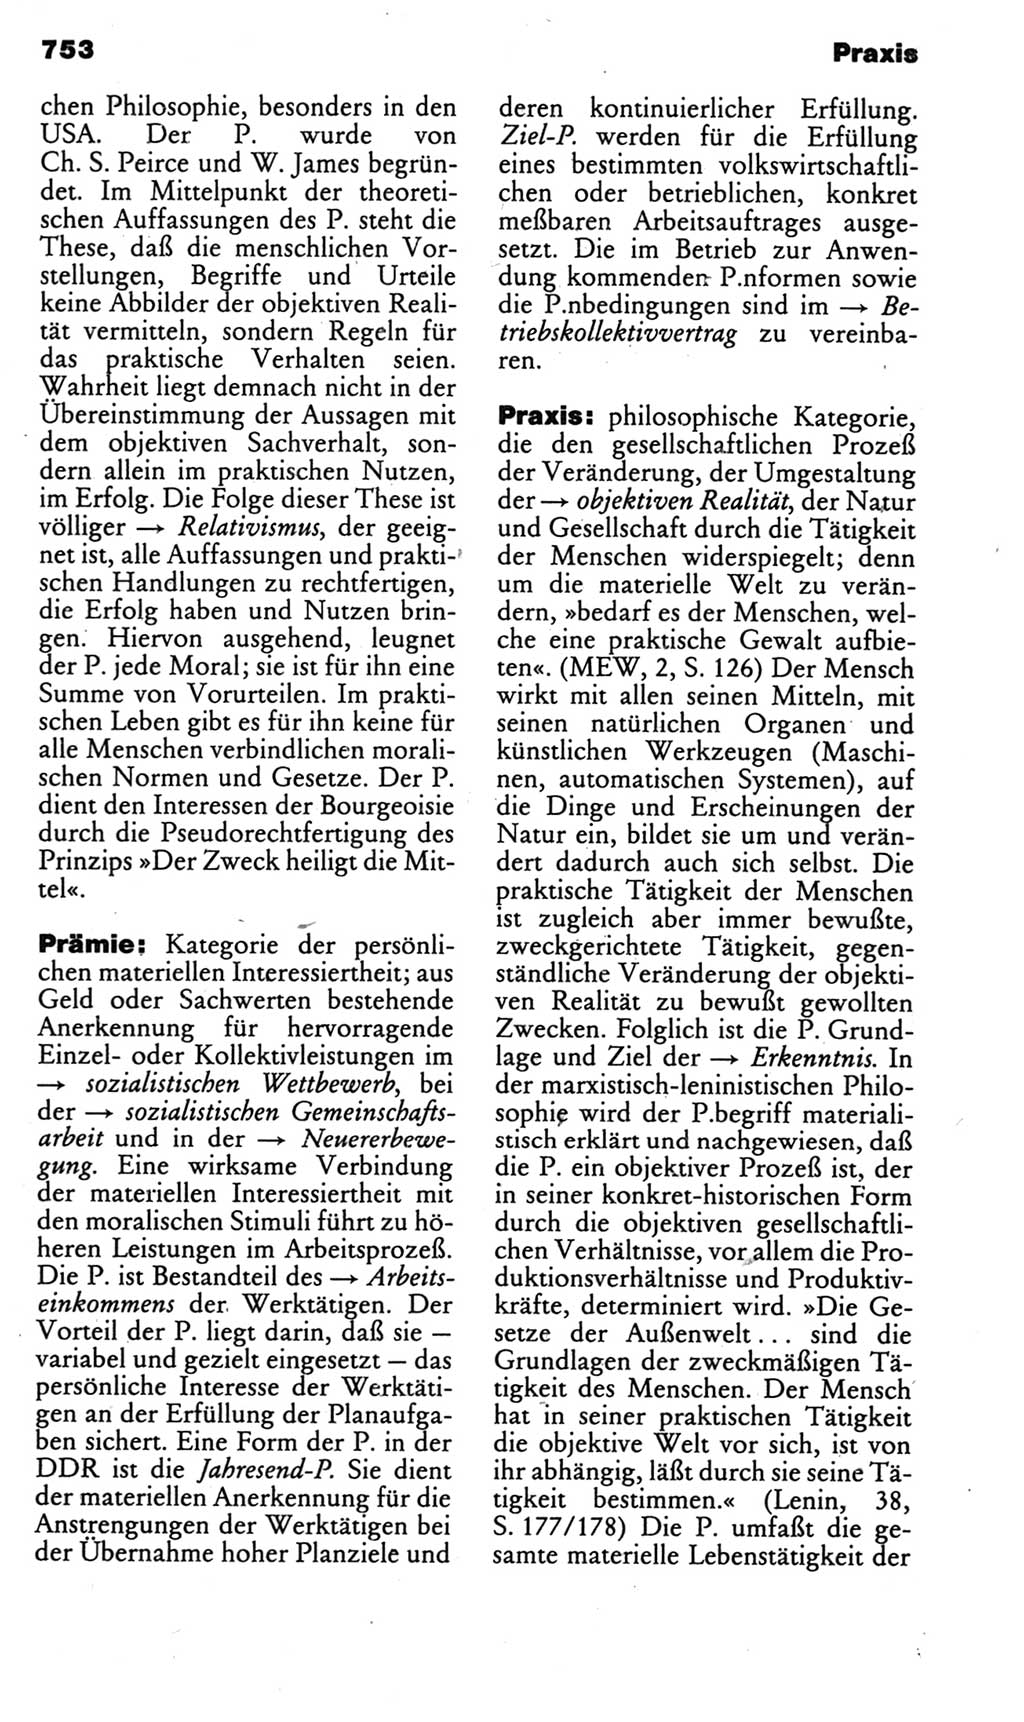 Kleines politisches Wörterbuch [Deutsche Demokratische Republik (DDR)] 1985, Seite 753 (Kl. pol. Wb. DDR 1985, S. 753)